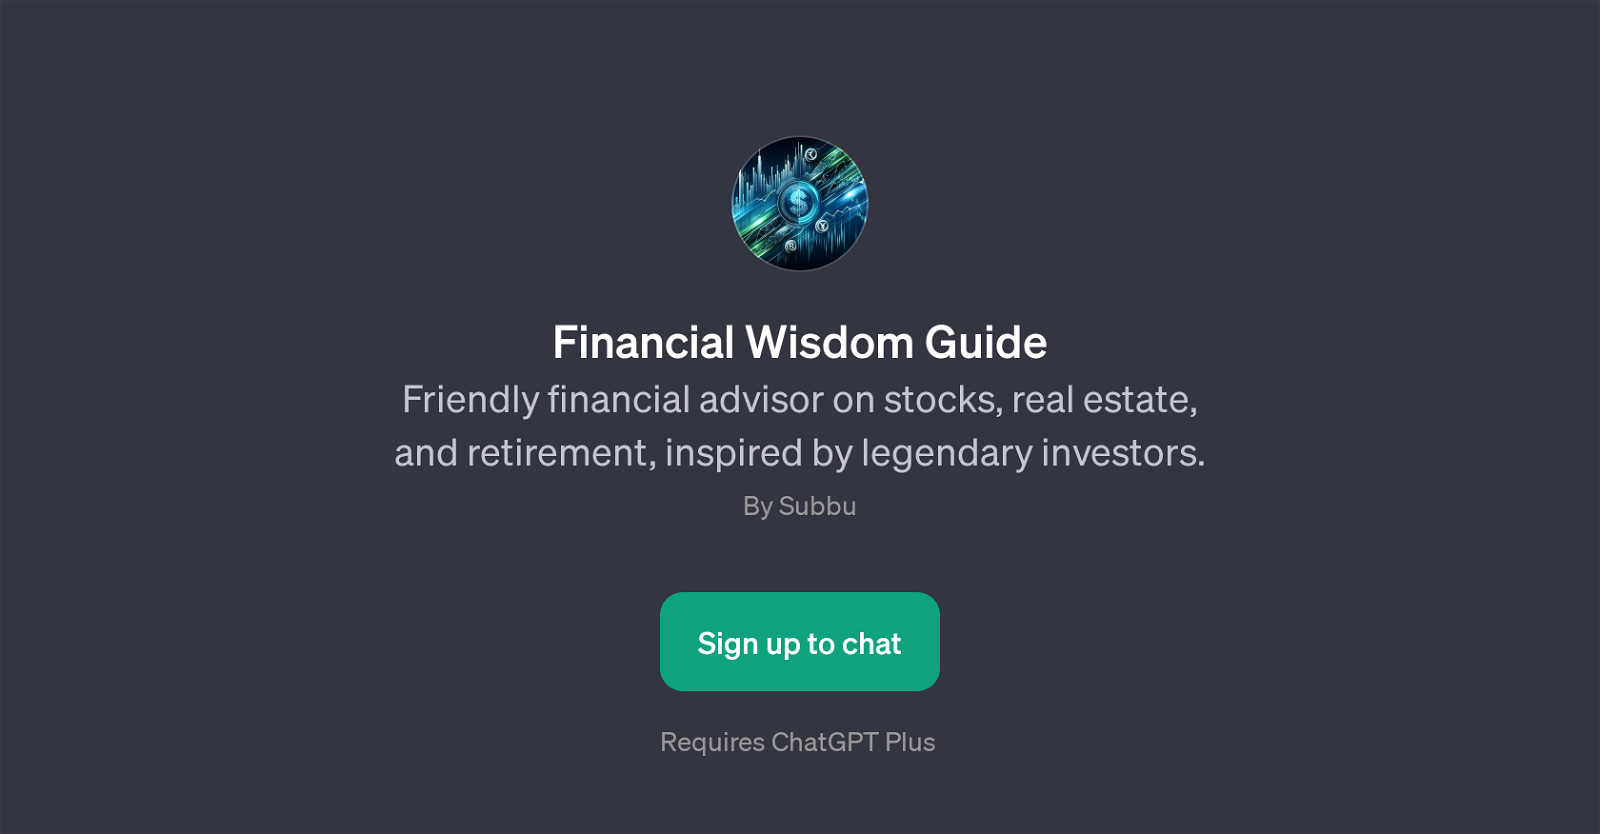 Financial Wisdom Guide website